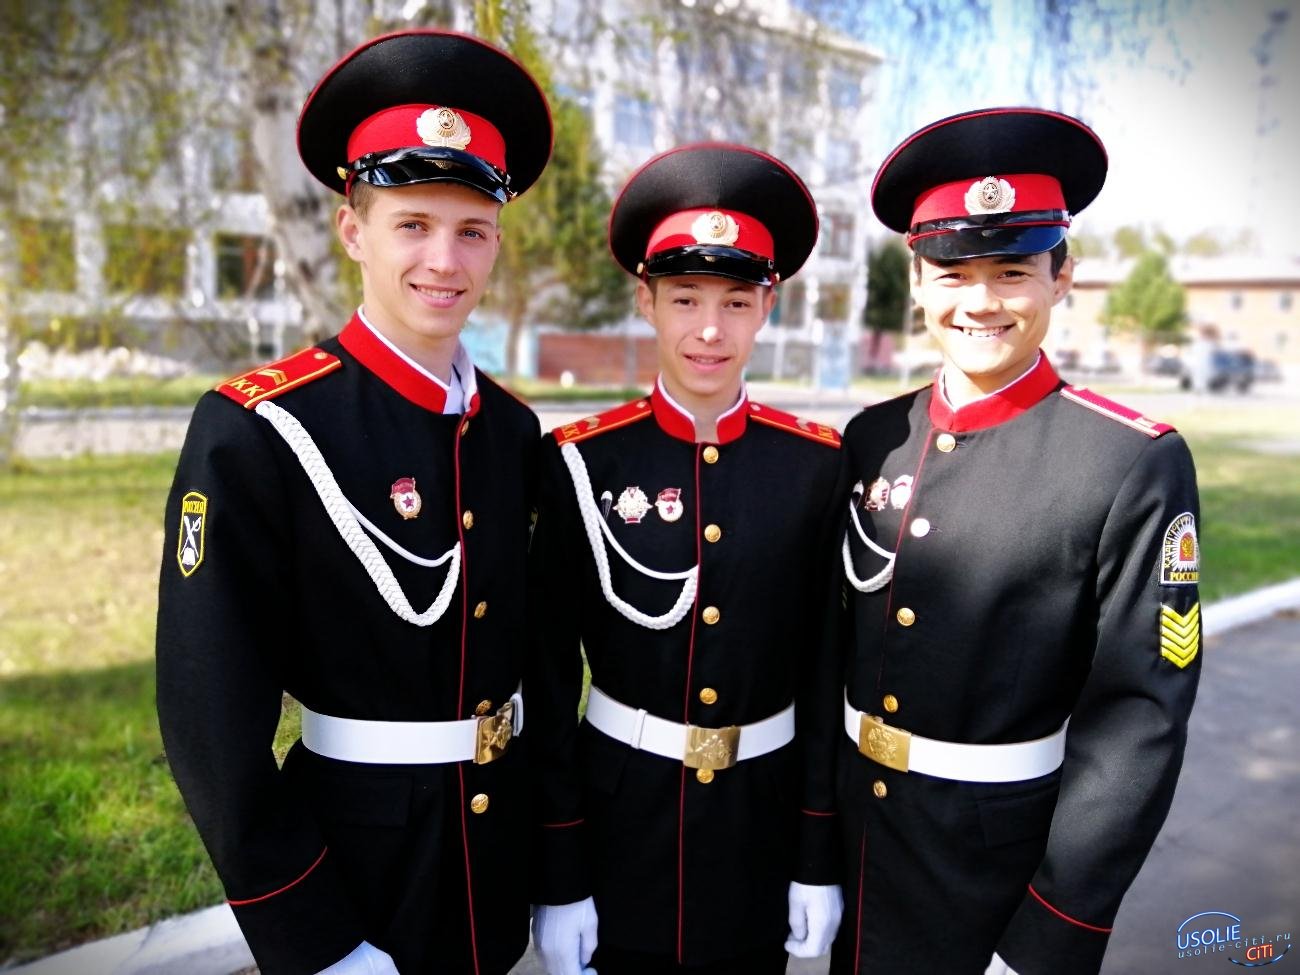 Усольский гвардейский кадетский корпус по праву гордится своими выпускниками